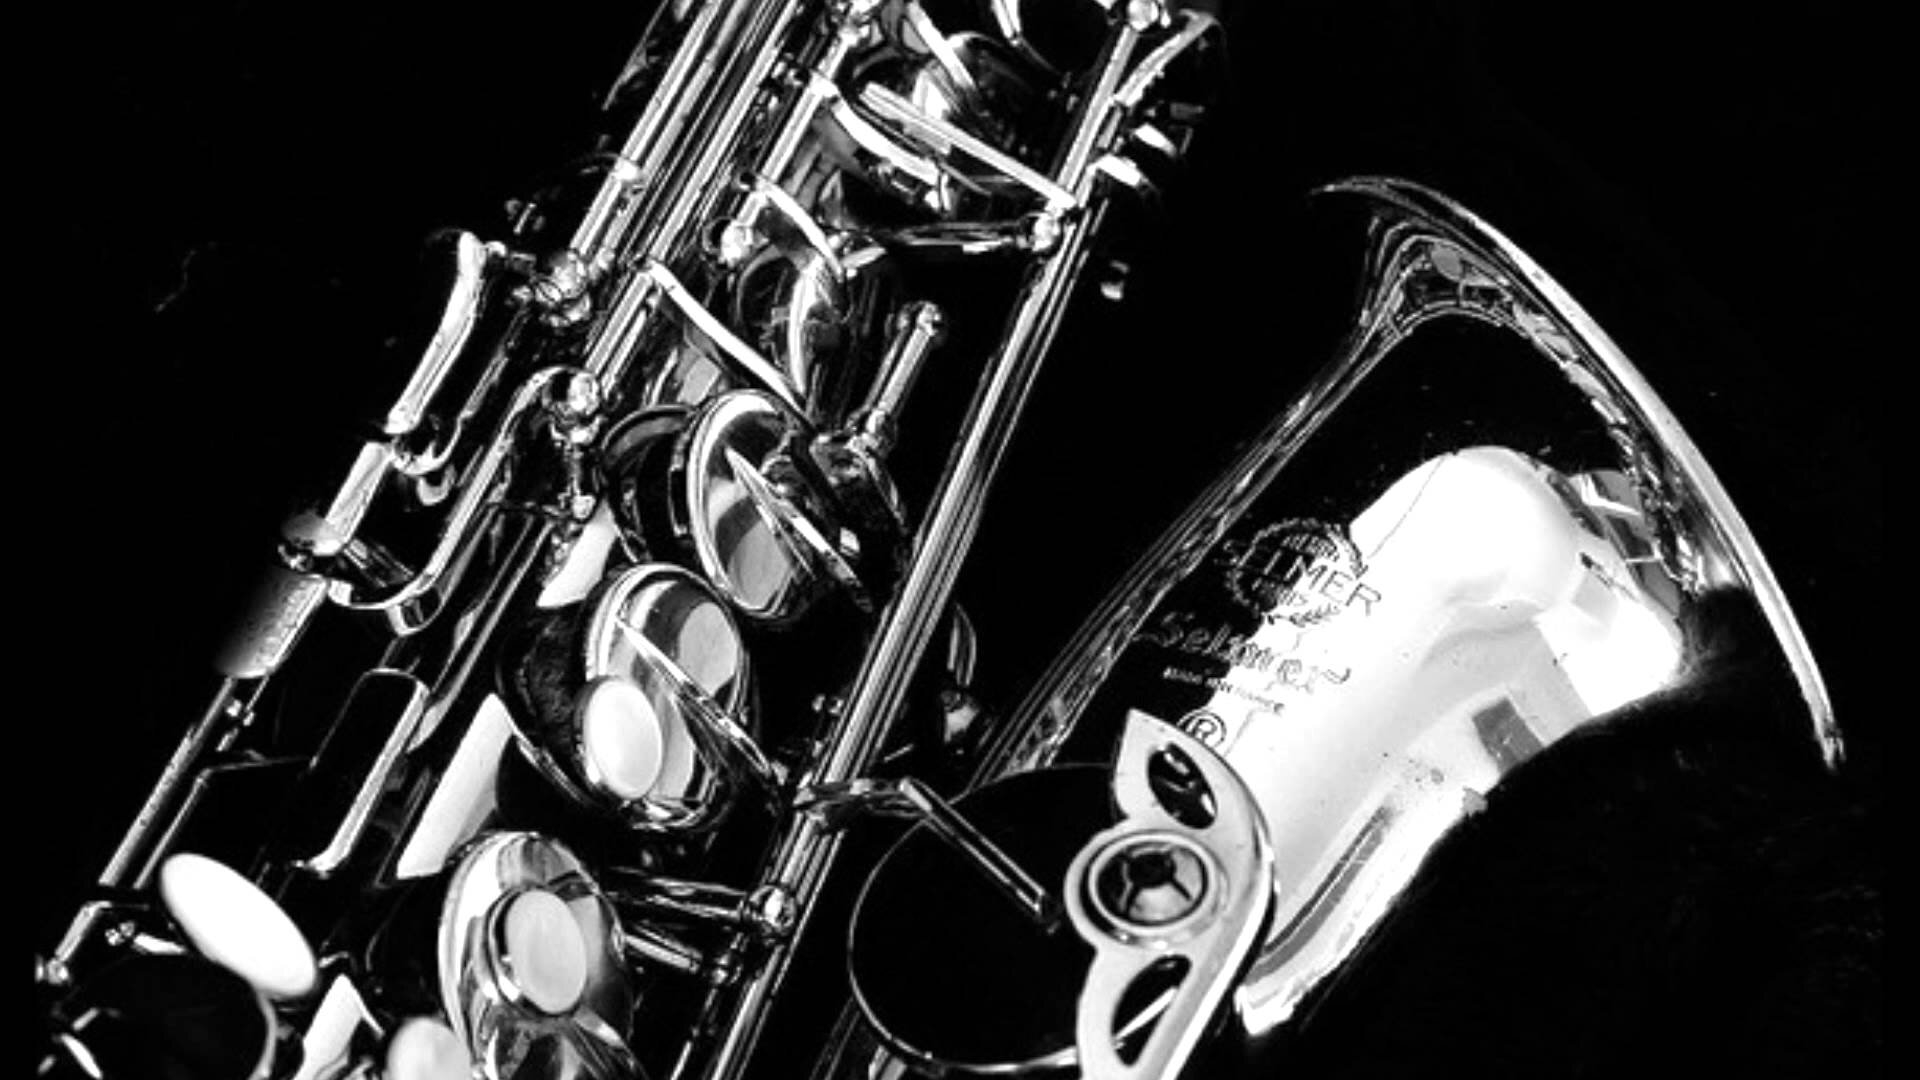 1920x1080 How do I improvise on blues scales on a saxophone? &acirc;&#128;&#148; LA JAZZ IMPROVISATION MUSIC LESSONS